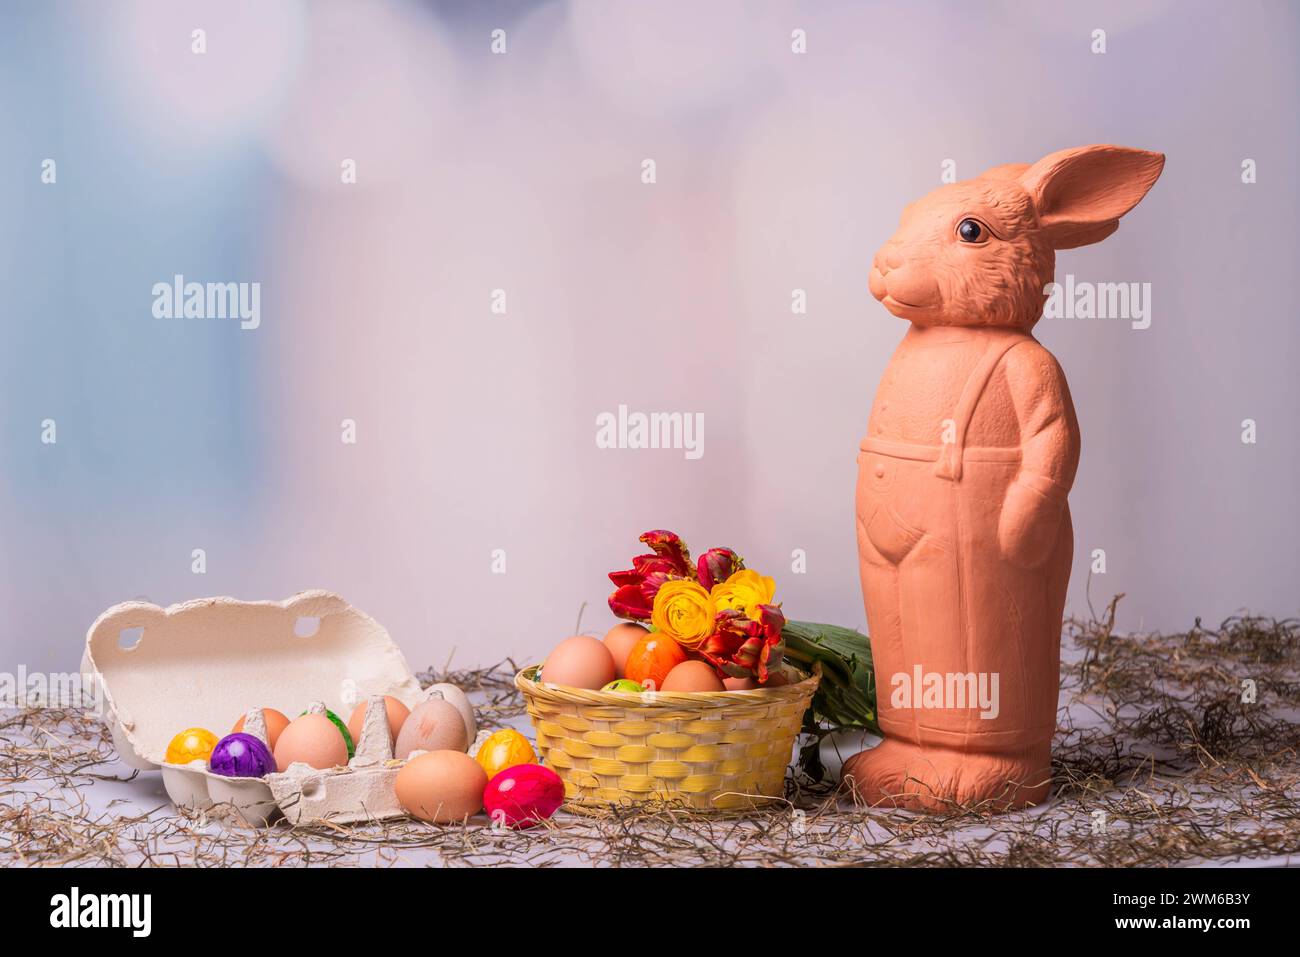 Eine Osterhasenfigur aus Ton vor einem Korb mit Ostereiern und buntem Hintergrund *** A clay Easter bunny figurine in front of a basket with Easter eggs and a colorful background Stock Photo